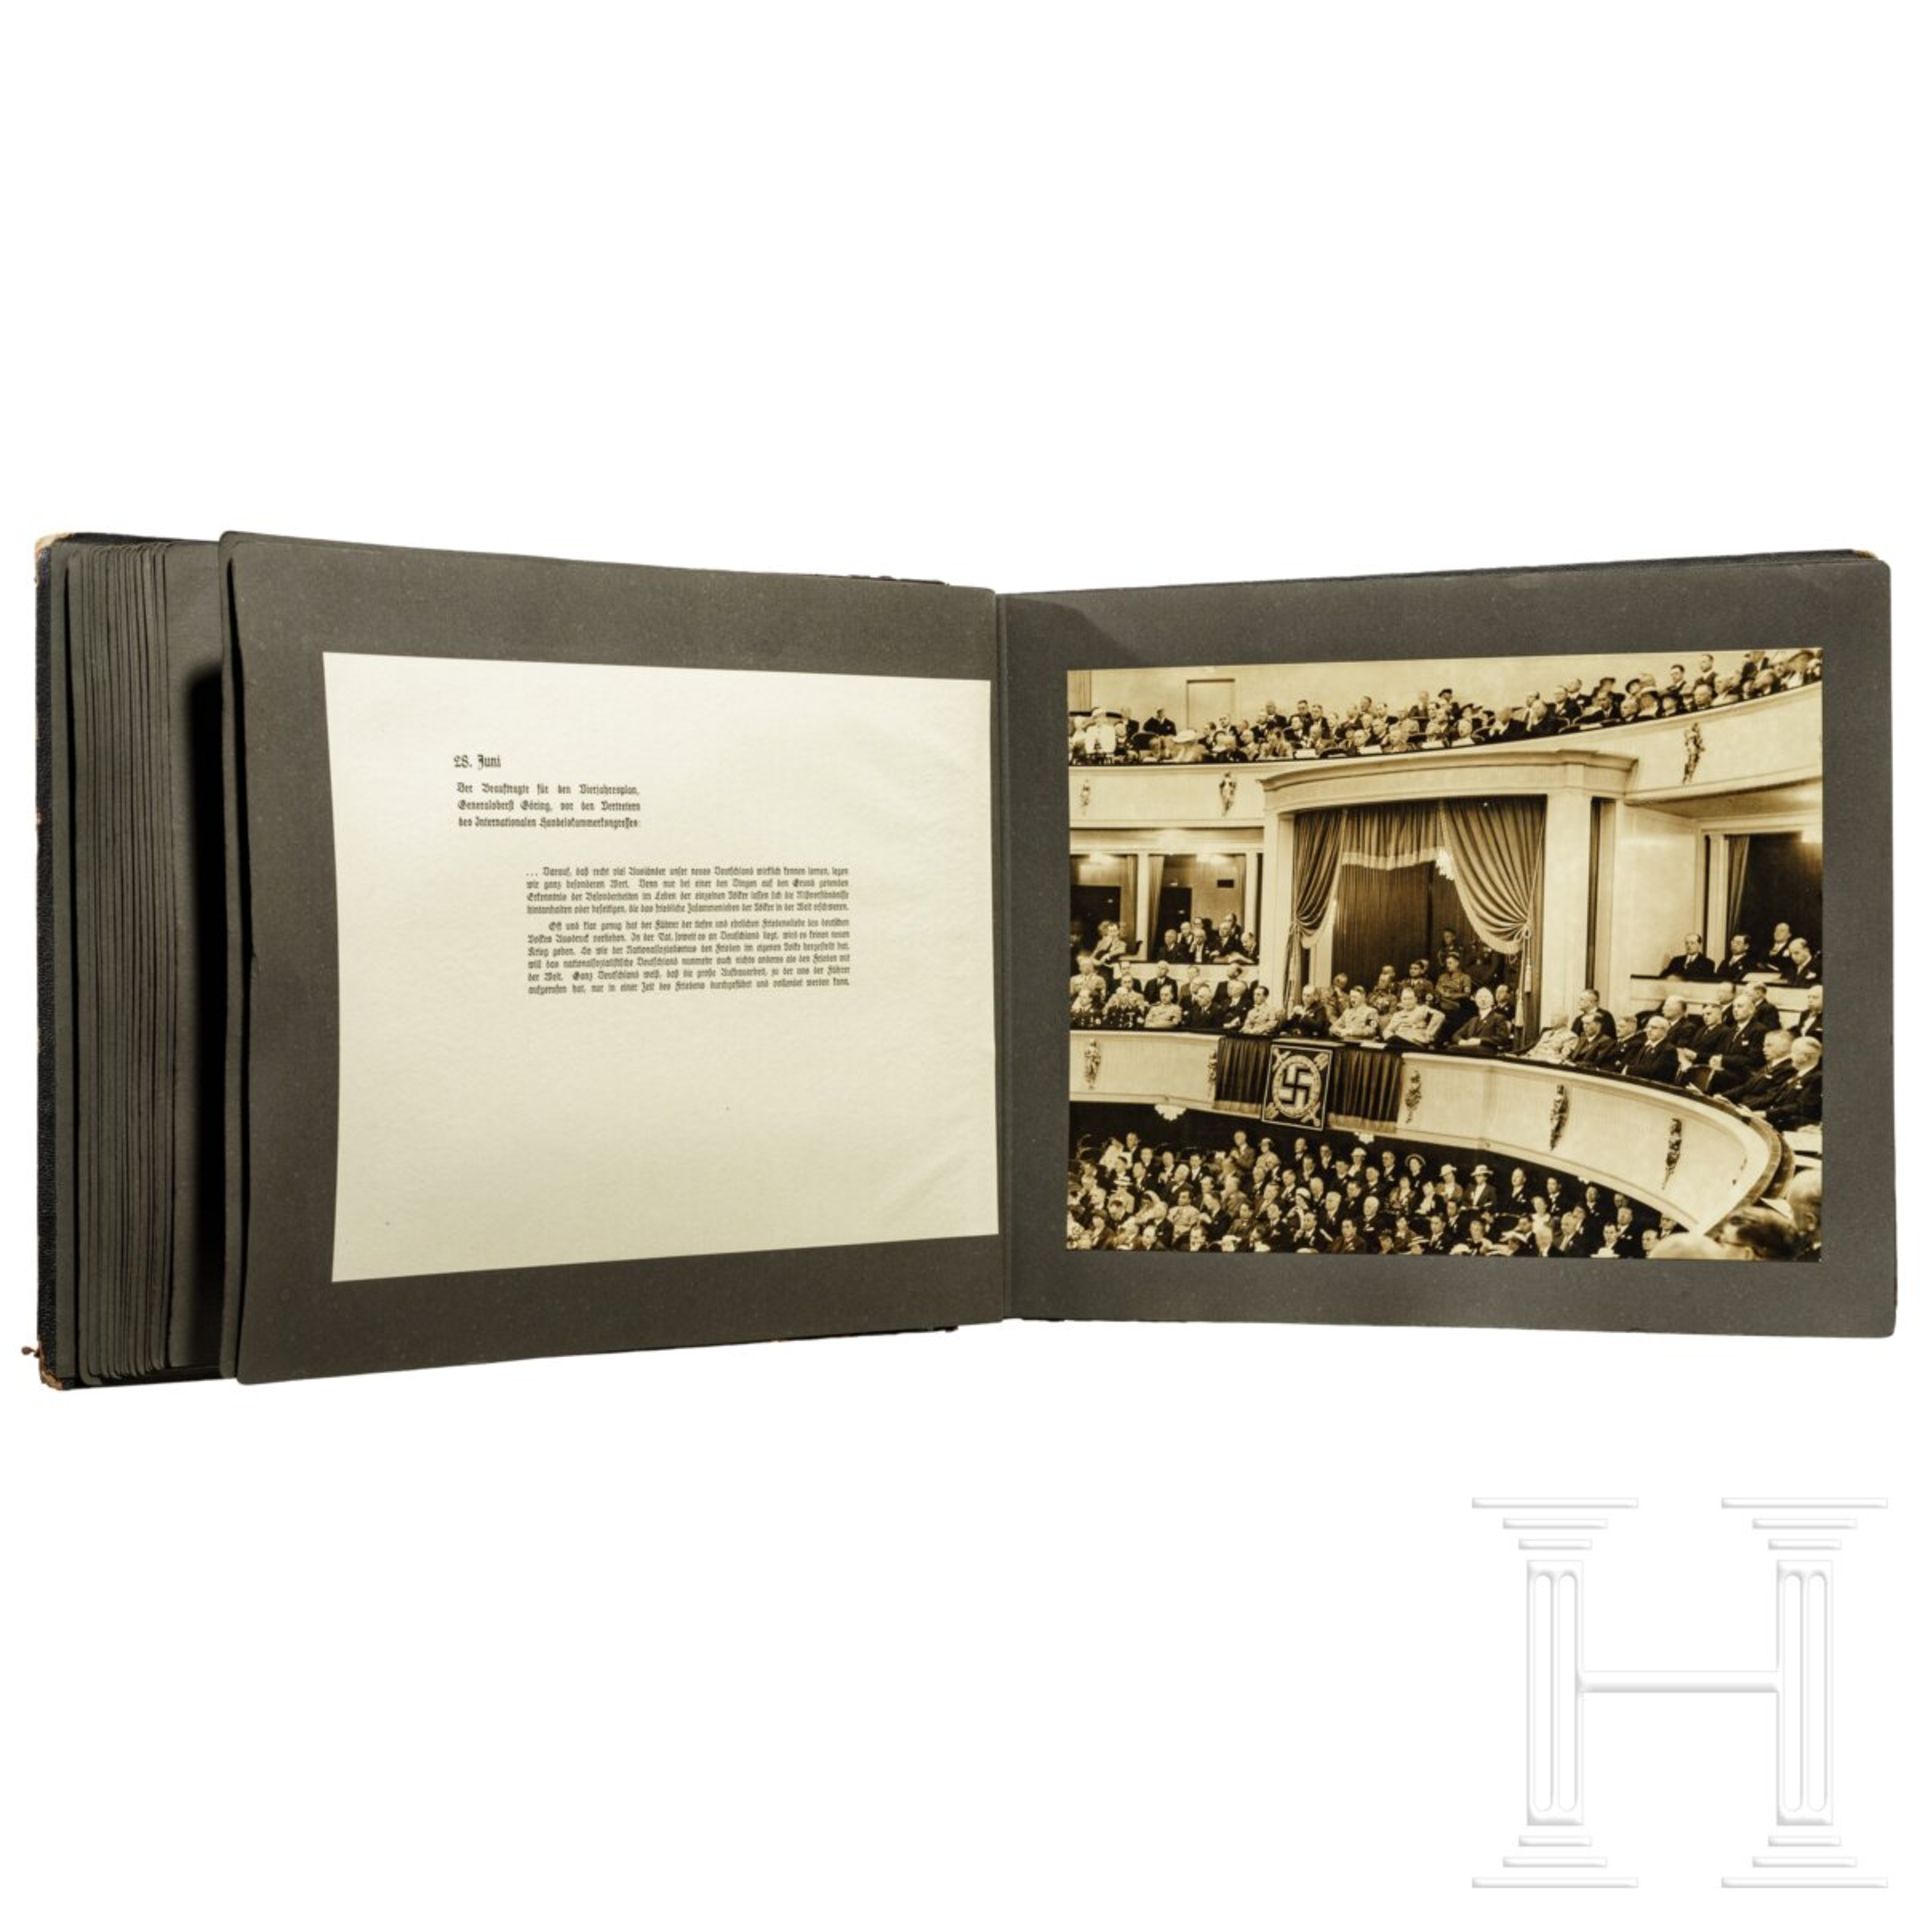 Geschenk-Fotoalbum der Partei 1937 mit 56 großformatigen Fotos und Textblättern